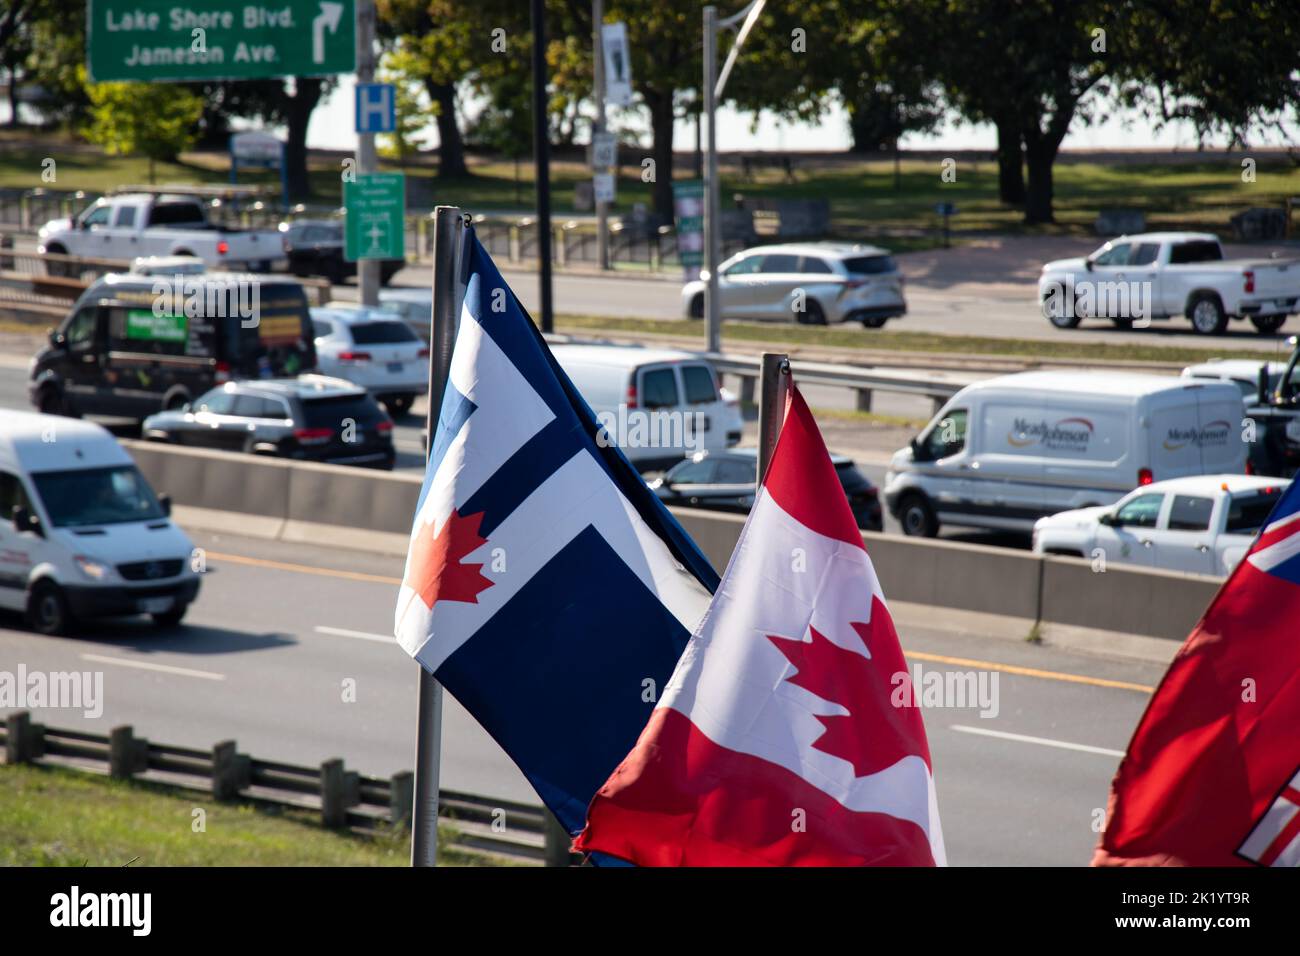 Le drapeau de la ville de Toronto et le drapeau canadien sont vus agitant par une journée ensoleillée le long d'une route très fréquentée Gardiner Expressway, au centre-ville de Toronto. Banque D'Images